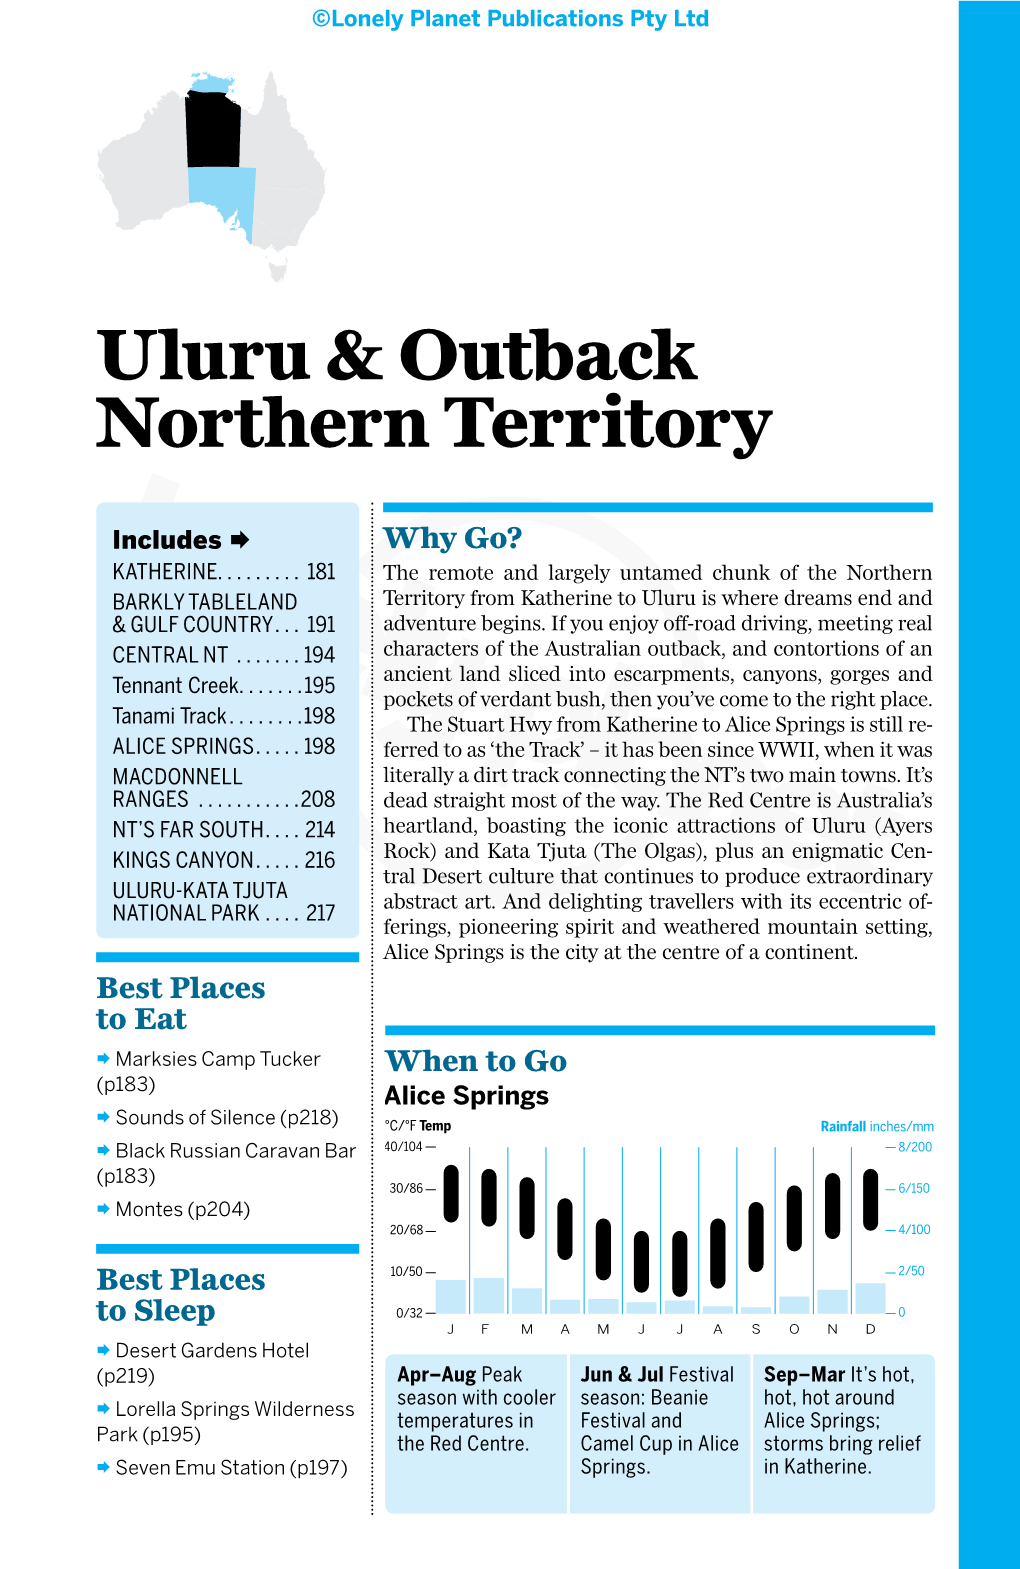 Uluru & Outback Northern Territory